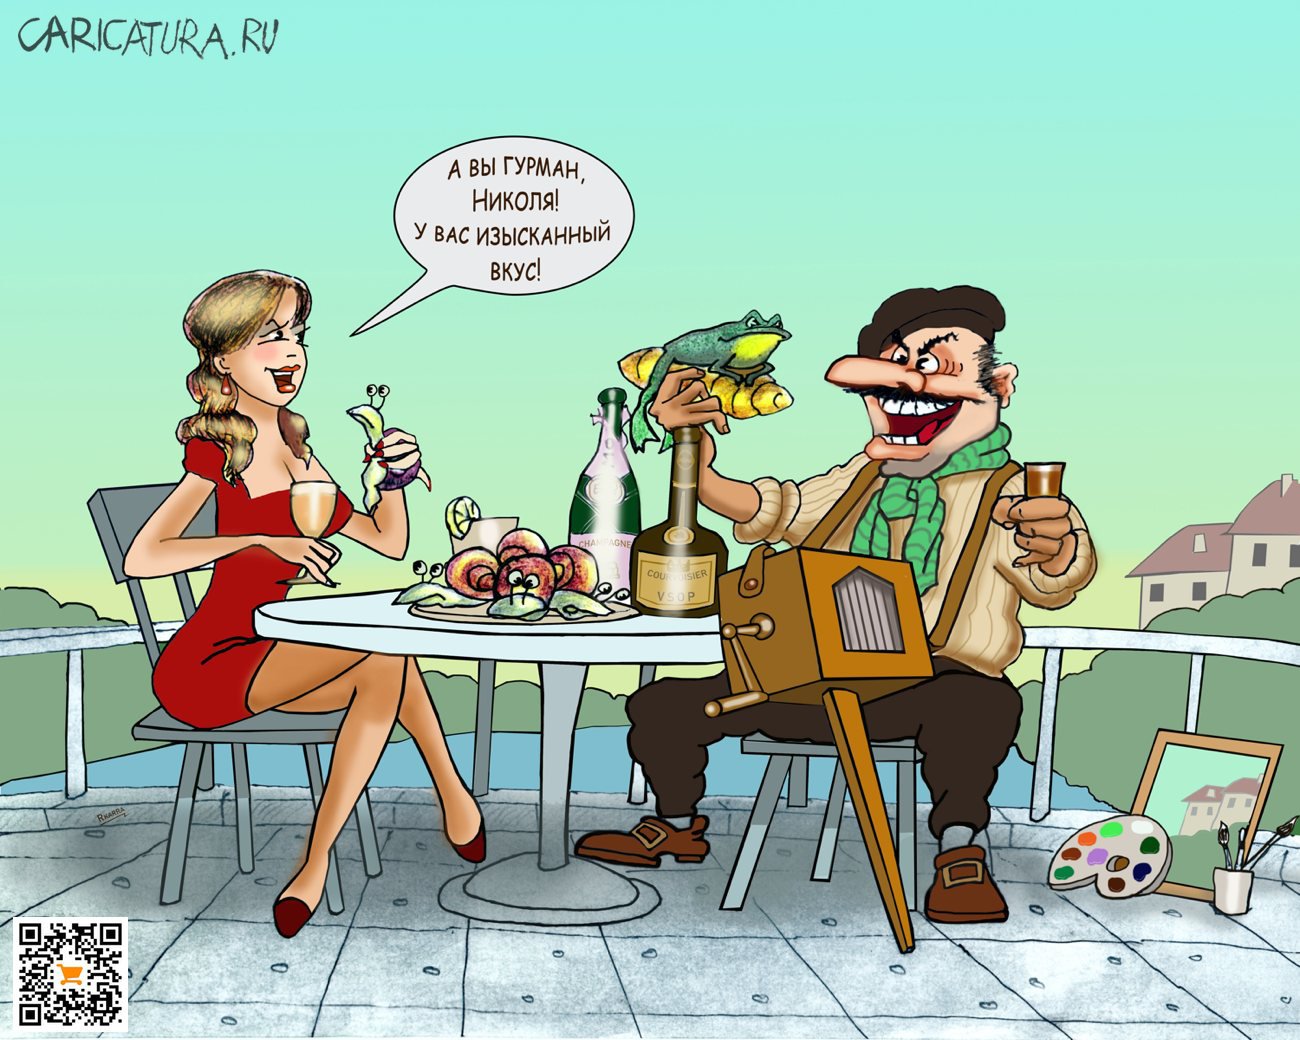 Карикатура "Кухни народов мира", Раф Карин